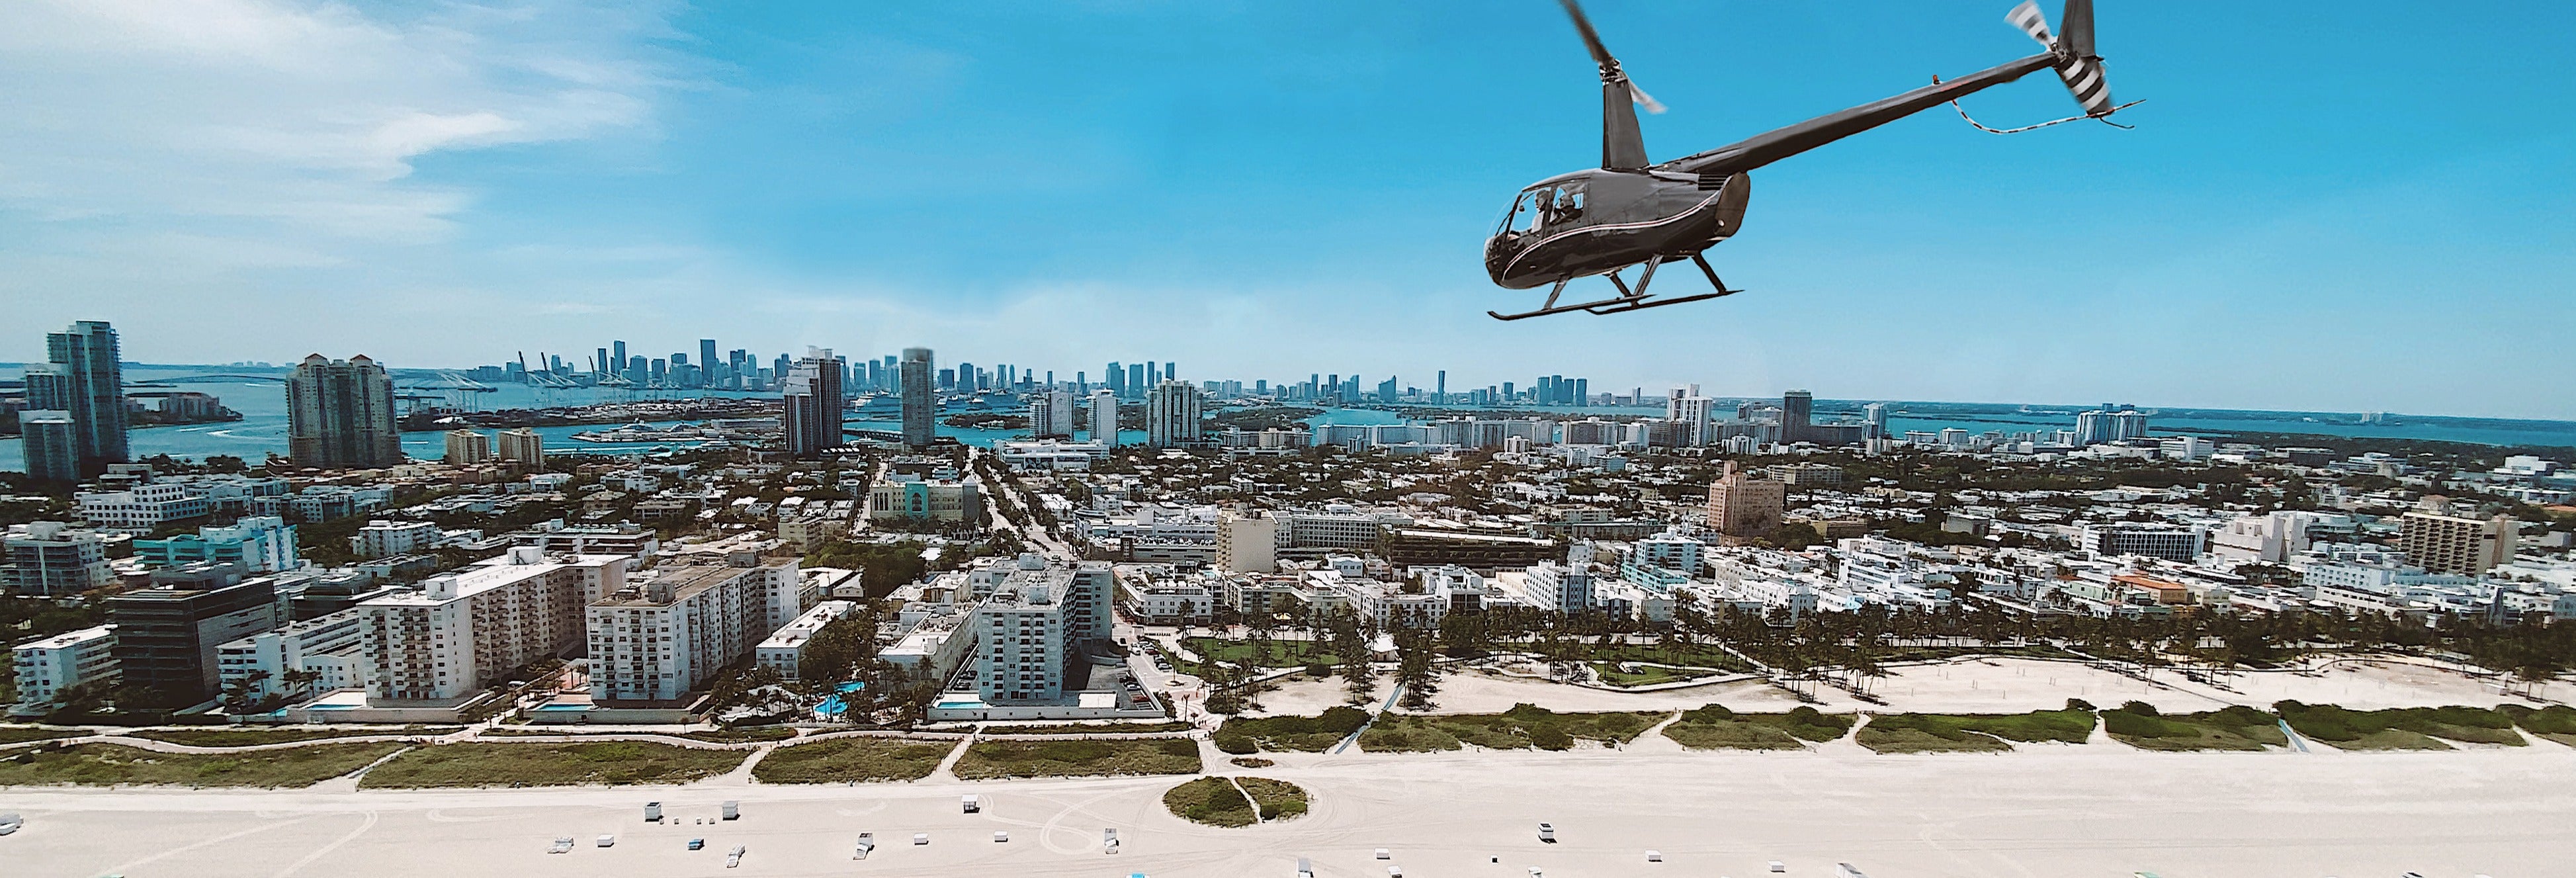 Passeio de helicóptero por Miami